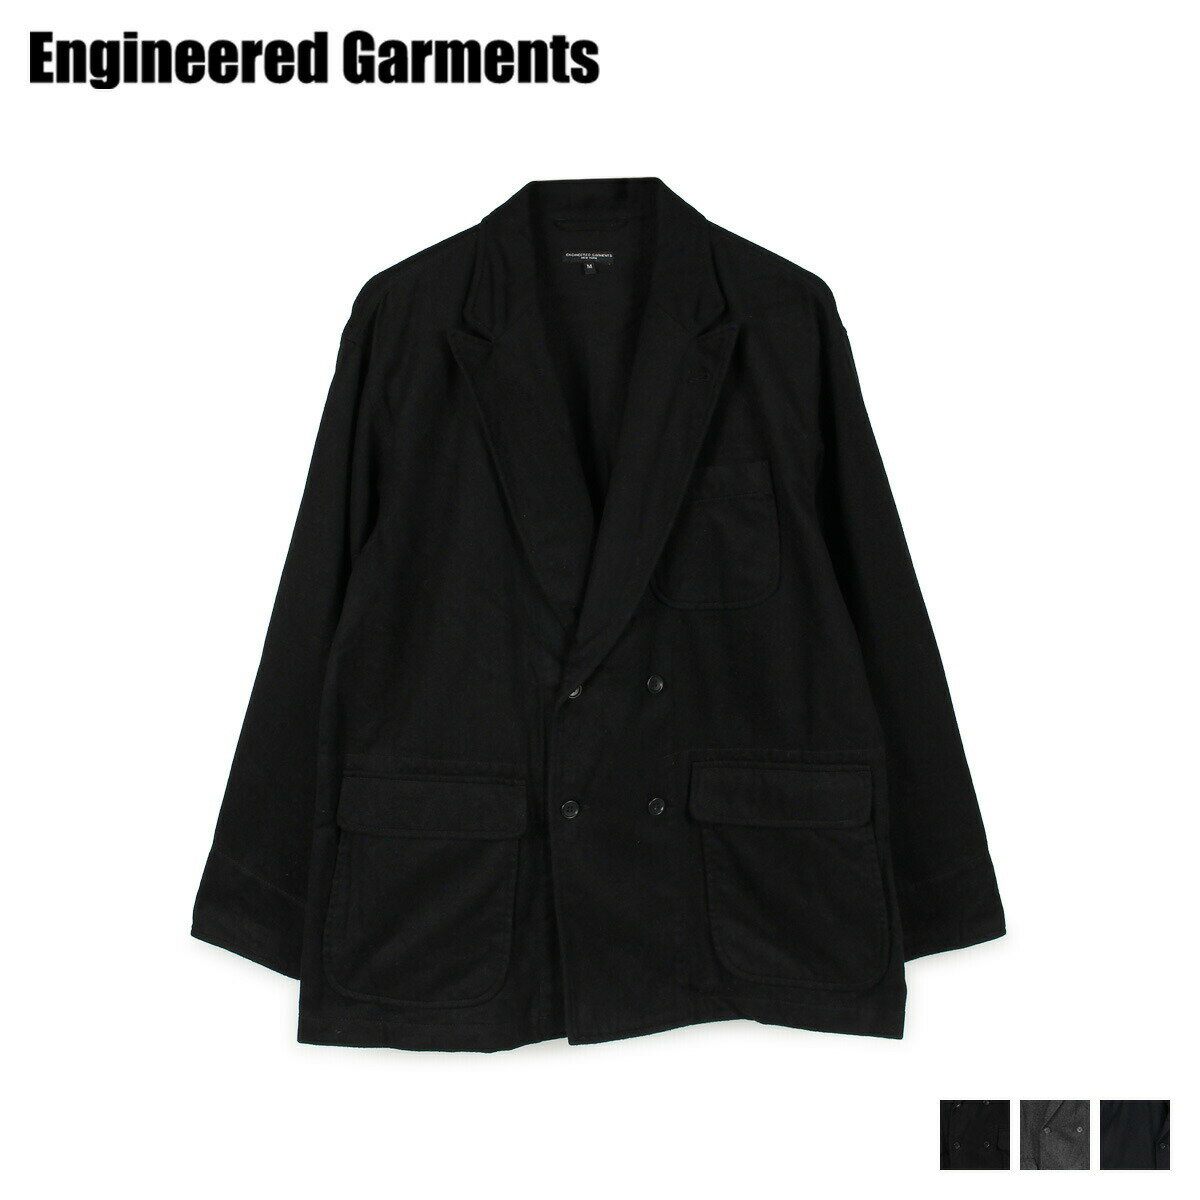 エンジニアド ガーメンツ ENGINEERED GARMENTS ジャケット アウター メンズ DL JACKET ブラック グレー ネイビー 黒 19FD003